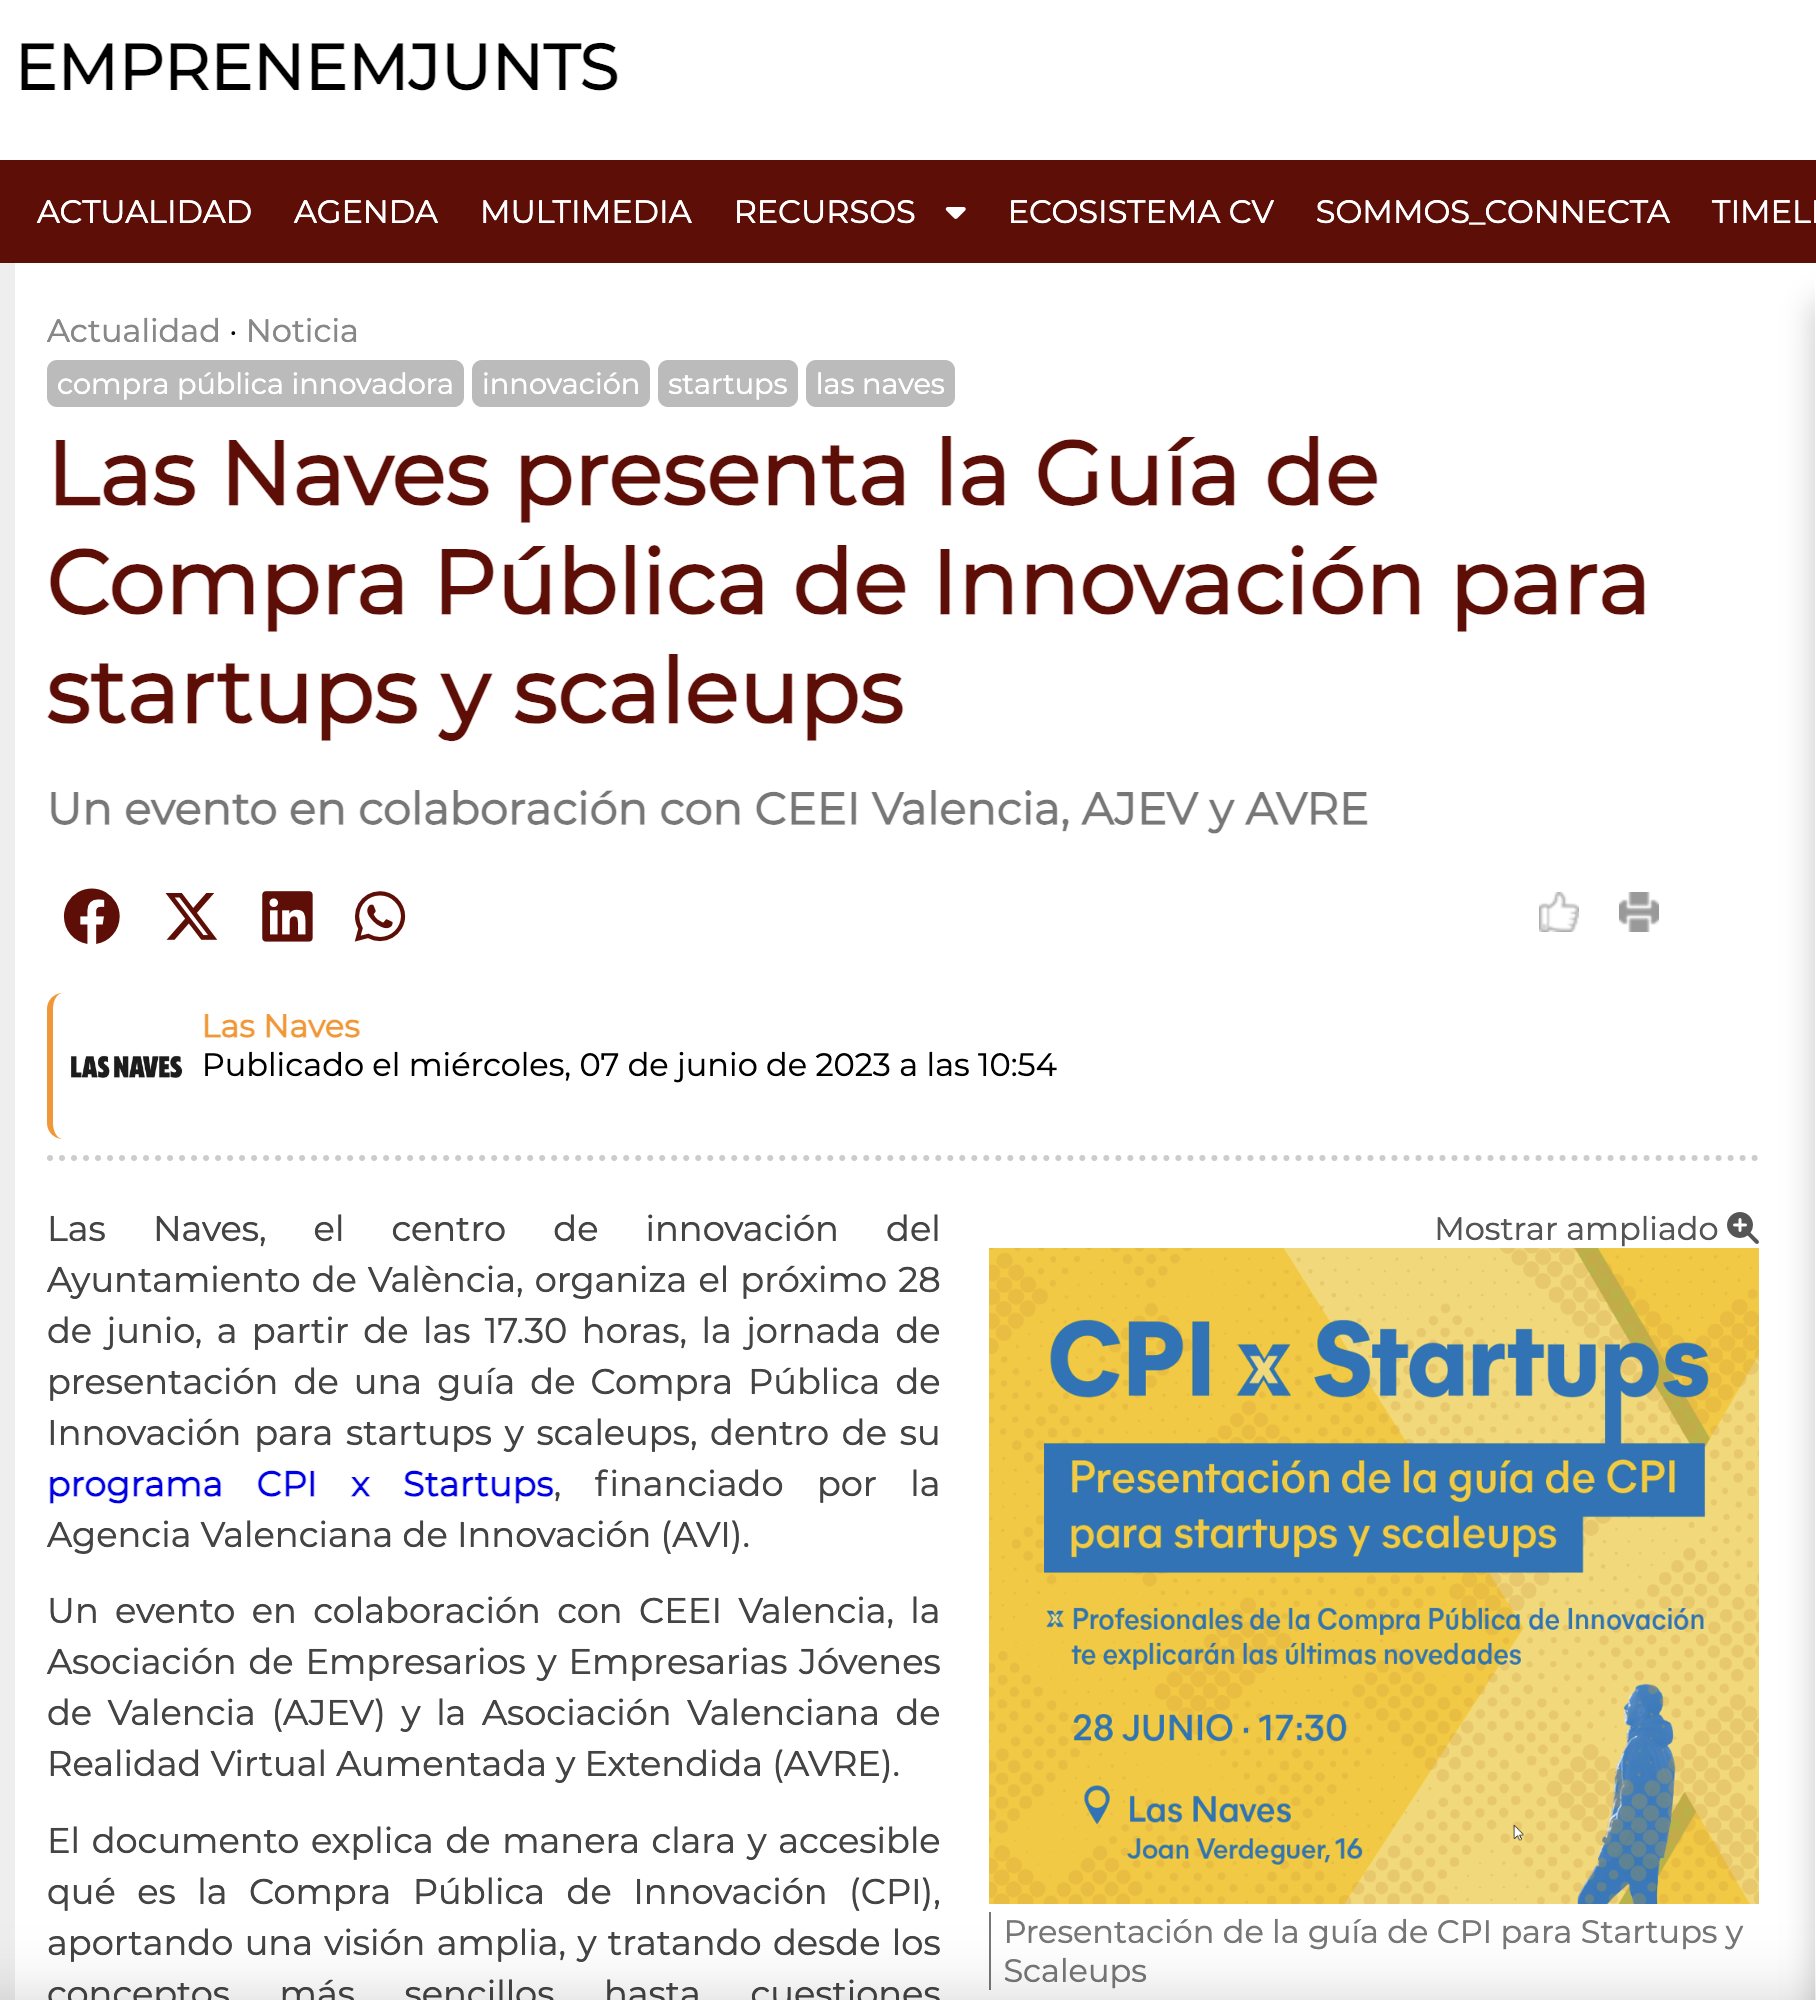 Las Naves presenta la Guía de Compra Pública de Innovación para startups y scaleups